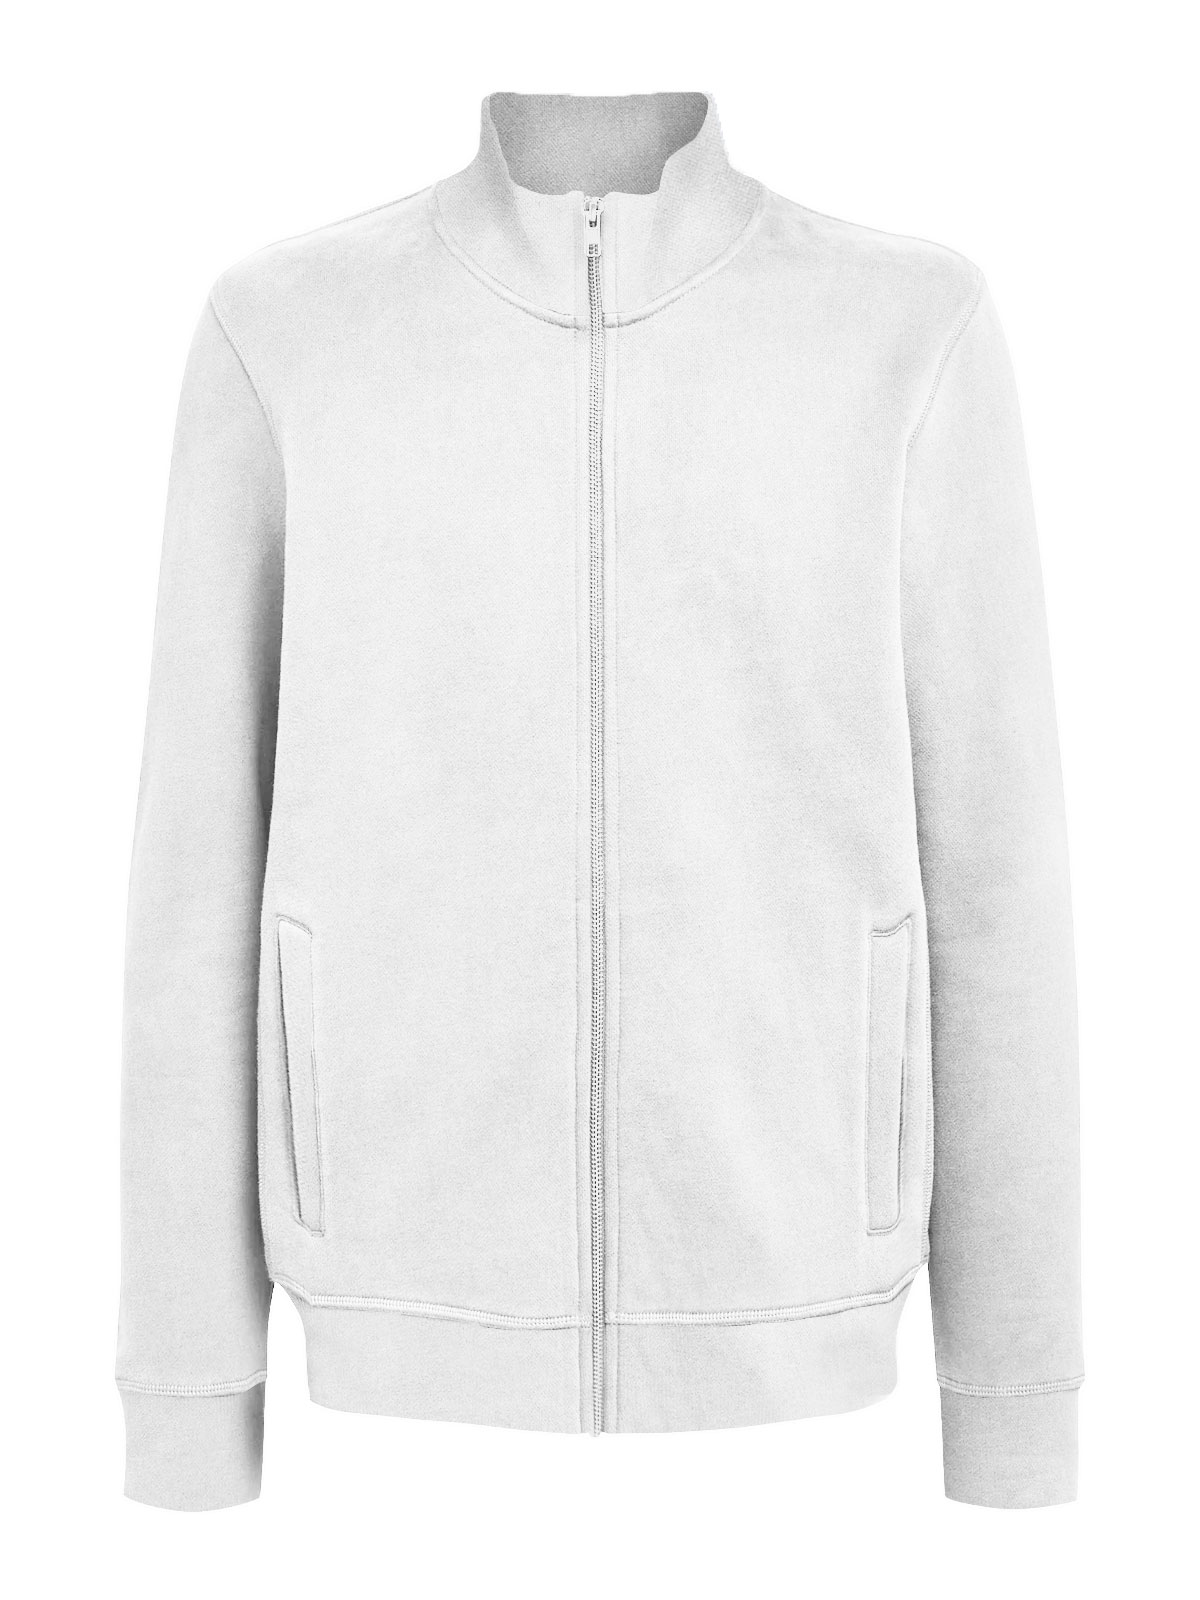 jacket-full-zip-white.webp